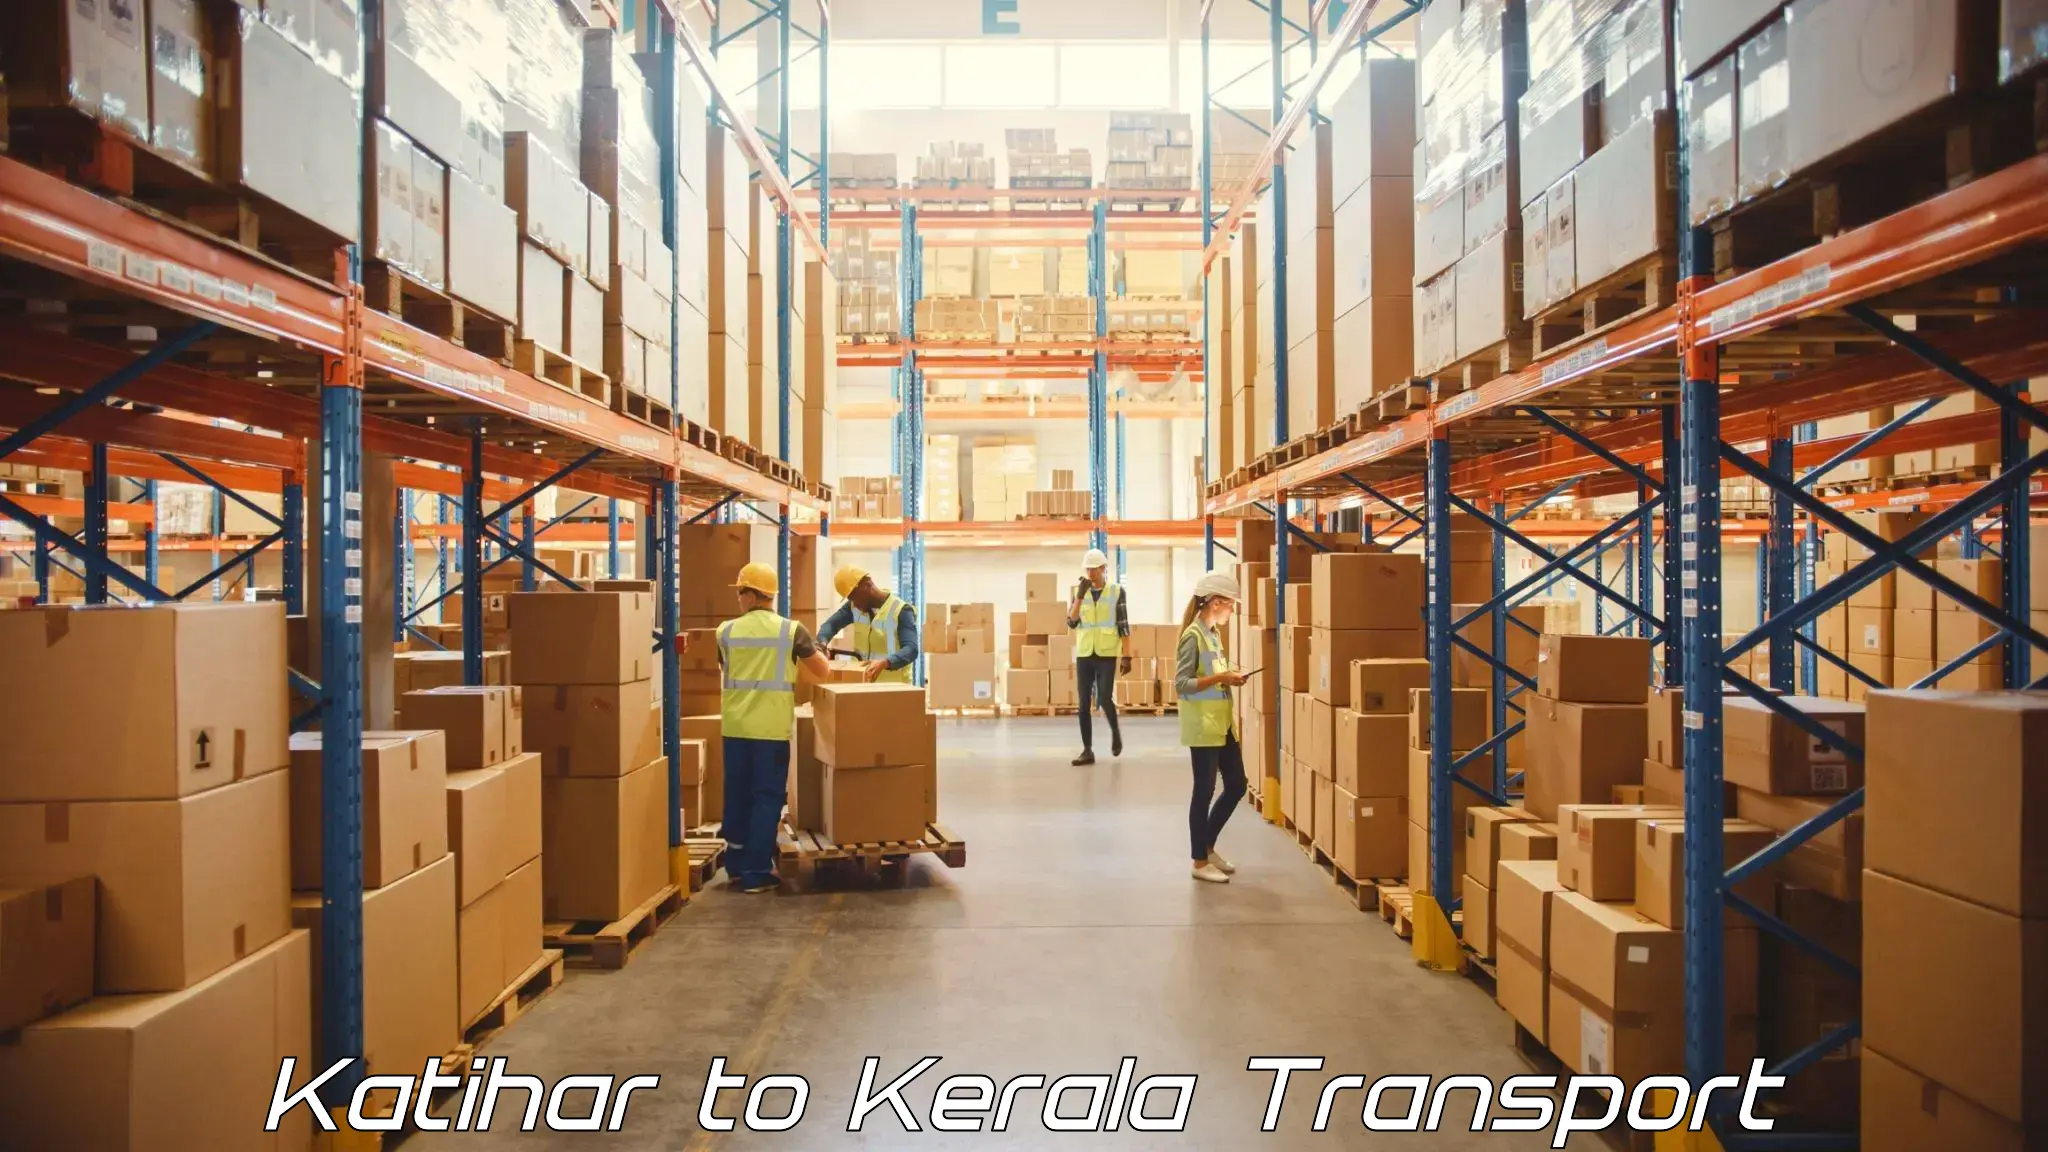 Online transport service Katihar to Punalur